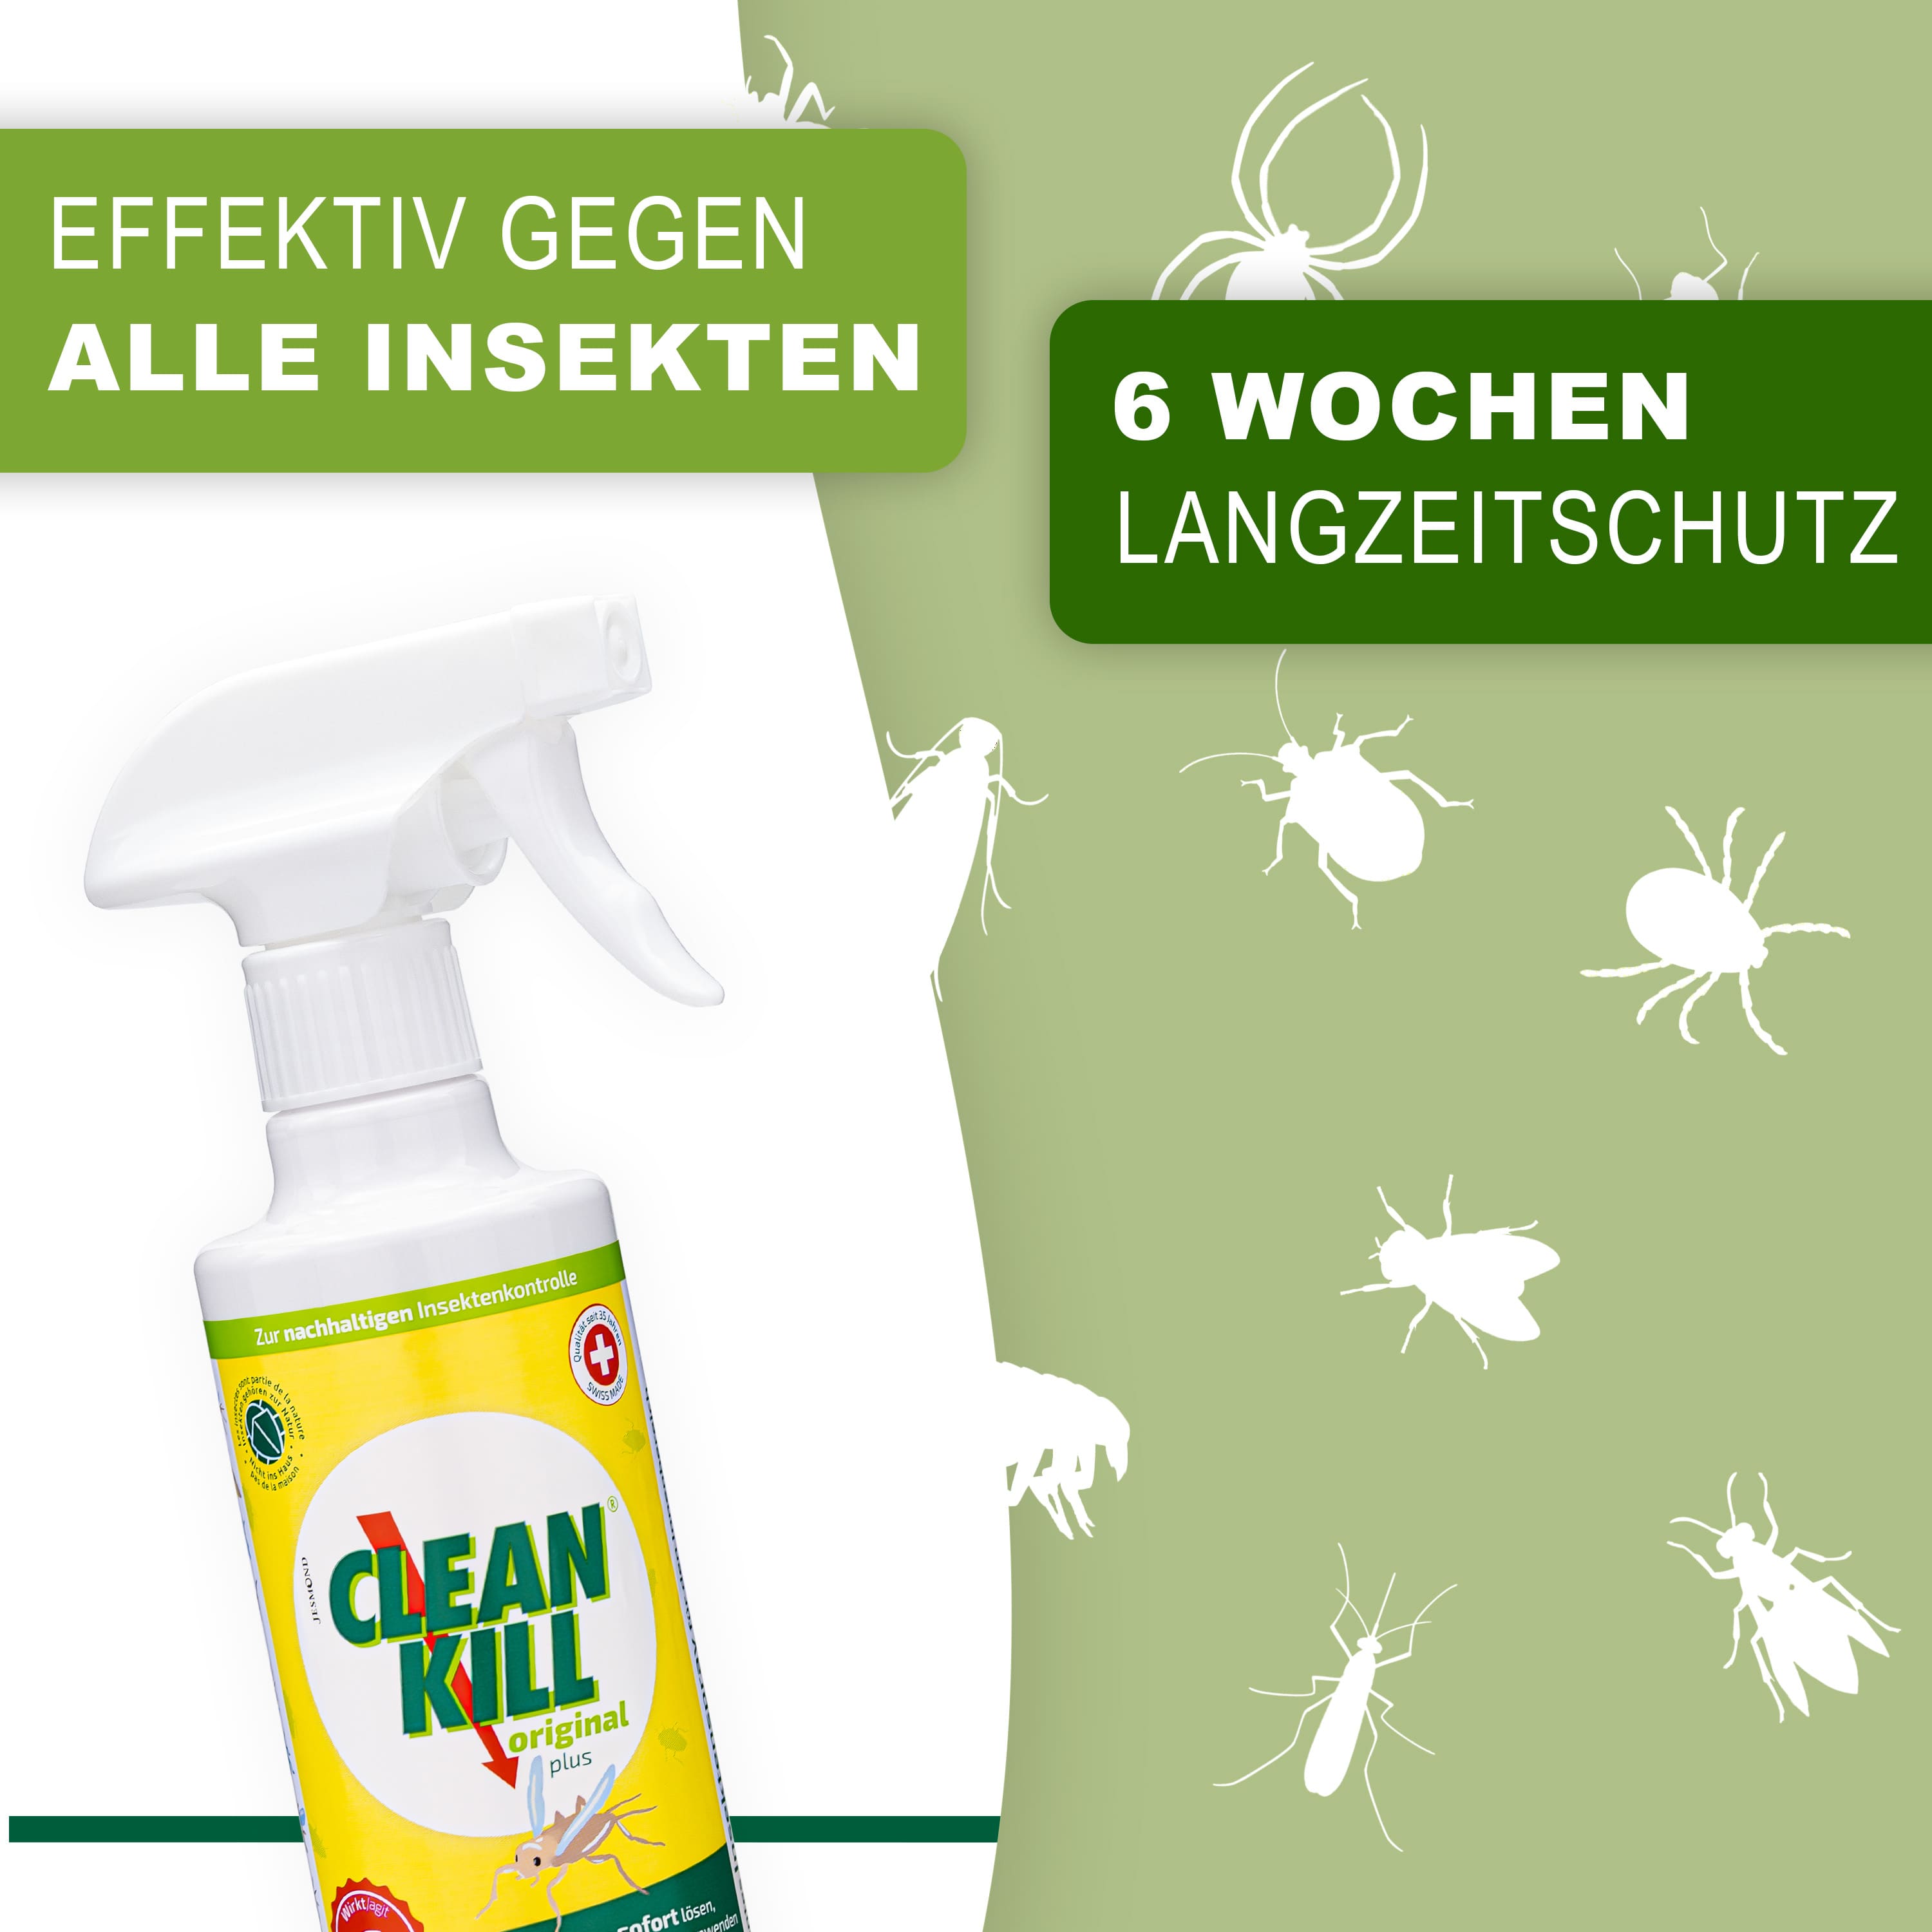 Clean Kill Original Insektenspray für den Innenbereich